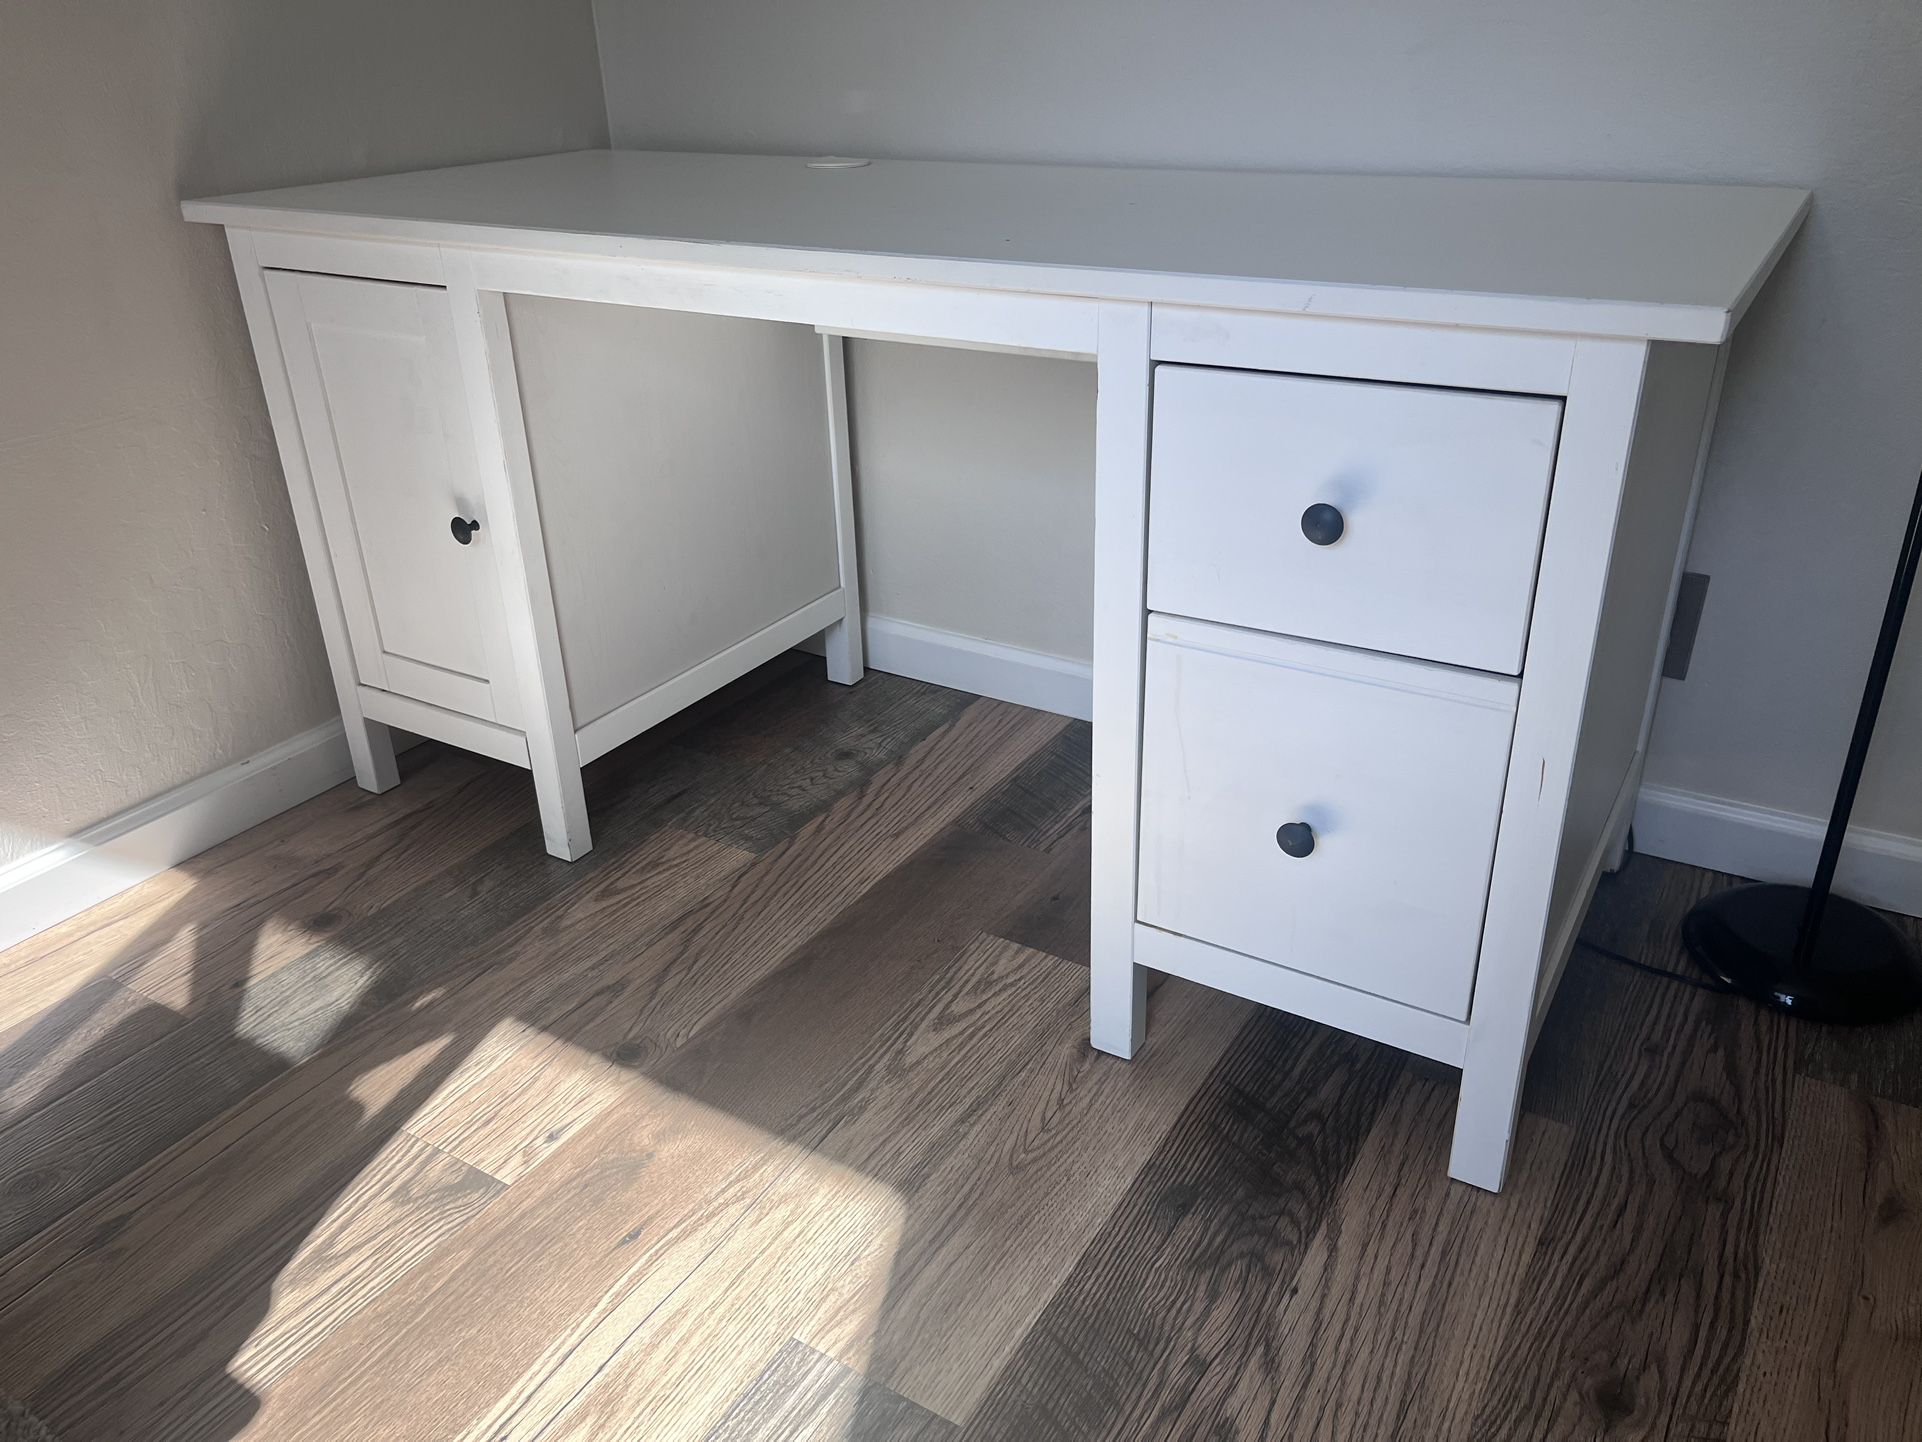 IKEA “Hemnes” Study Desk - white 